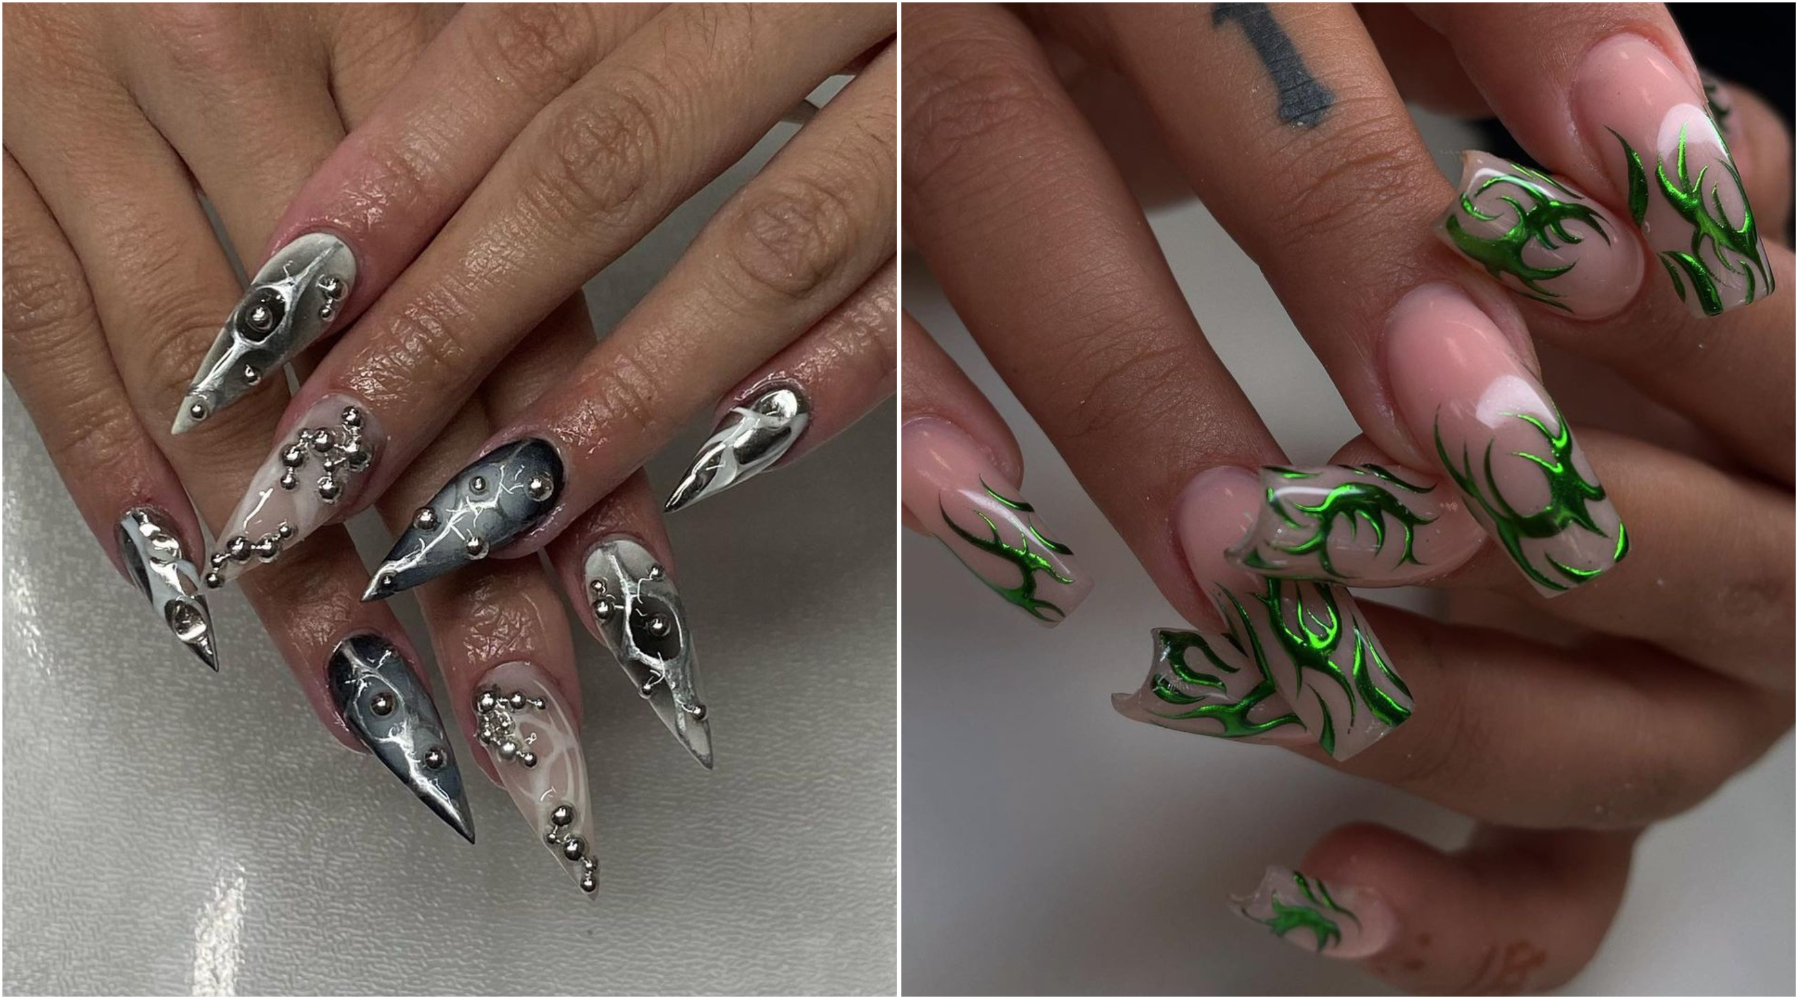 Nail art inspiracija: Cyber nails